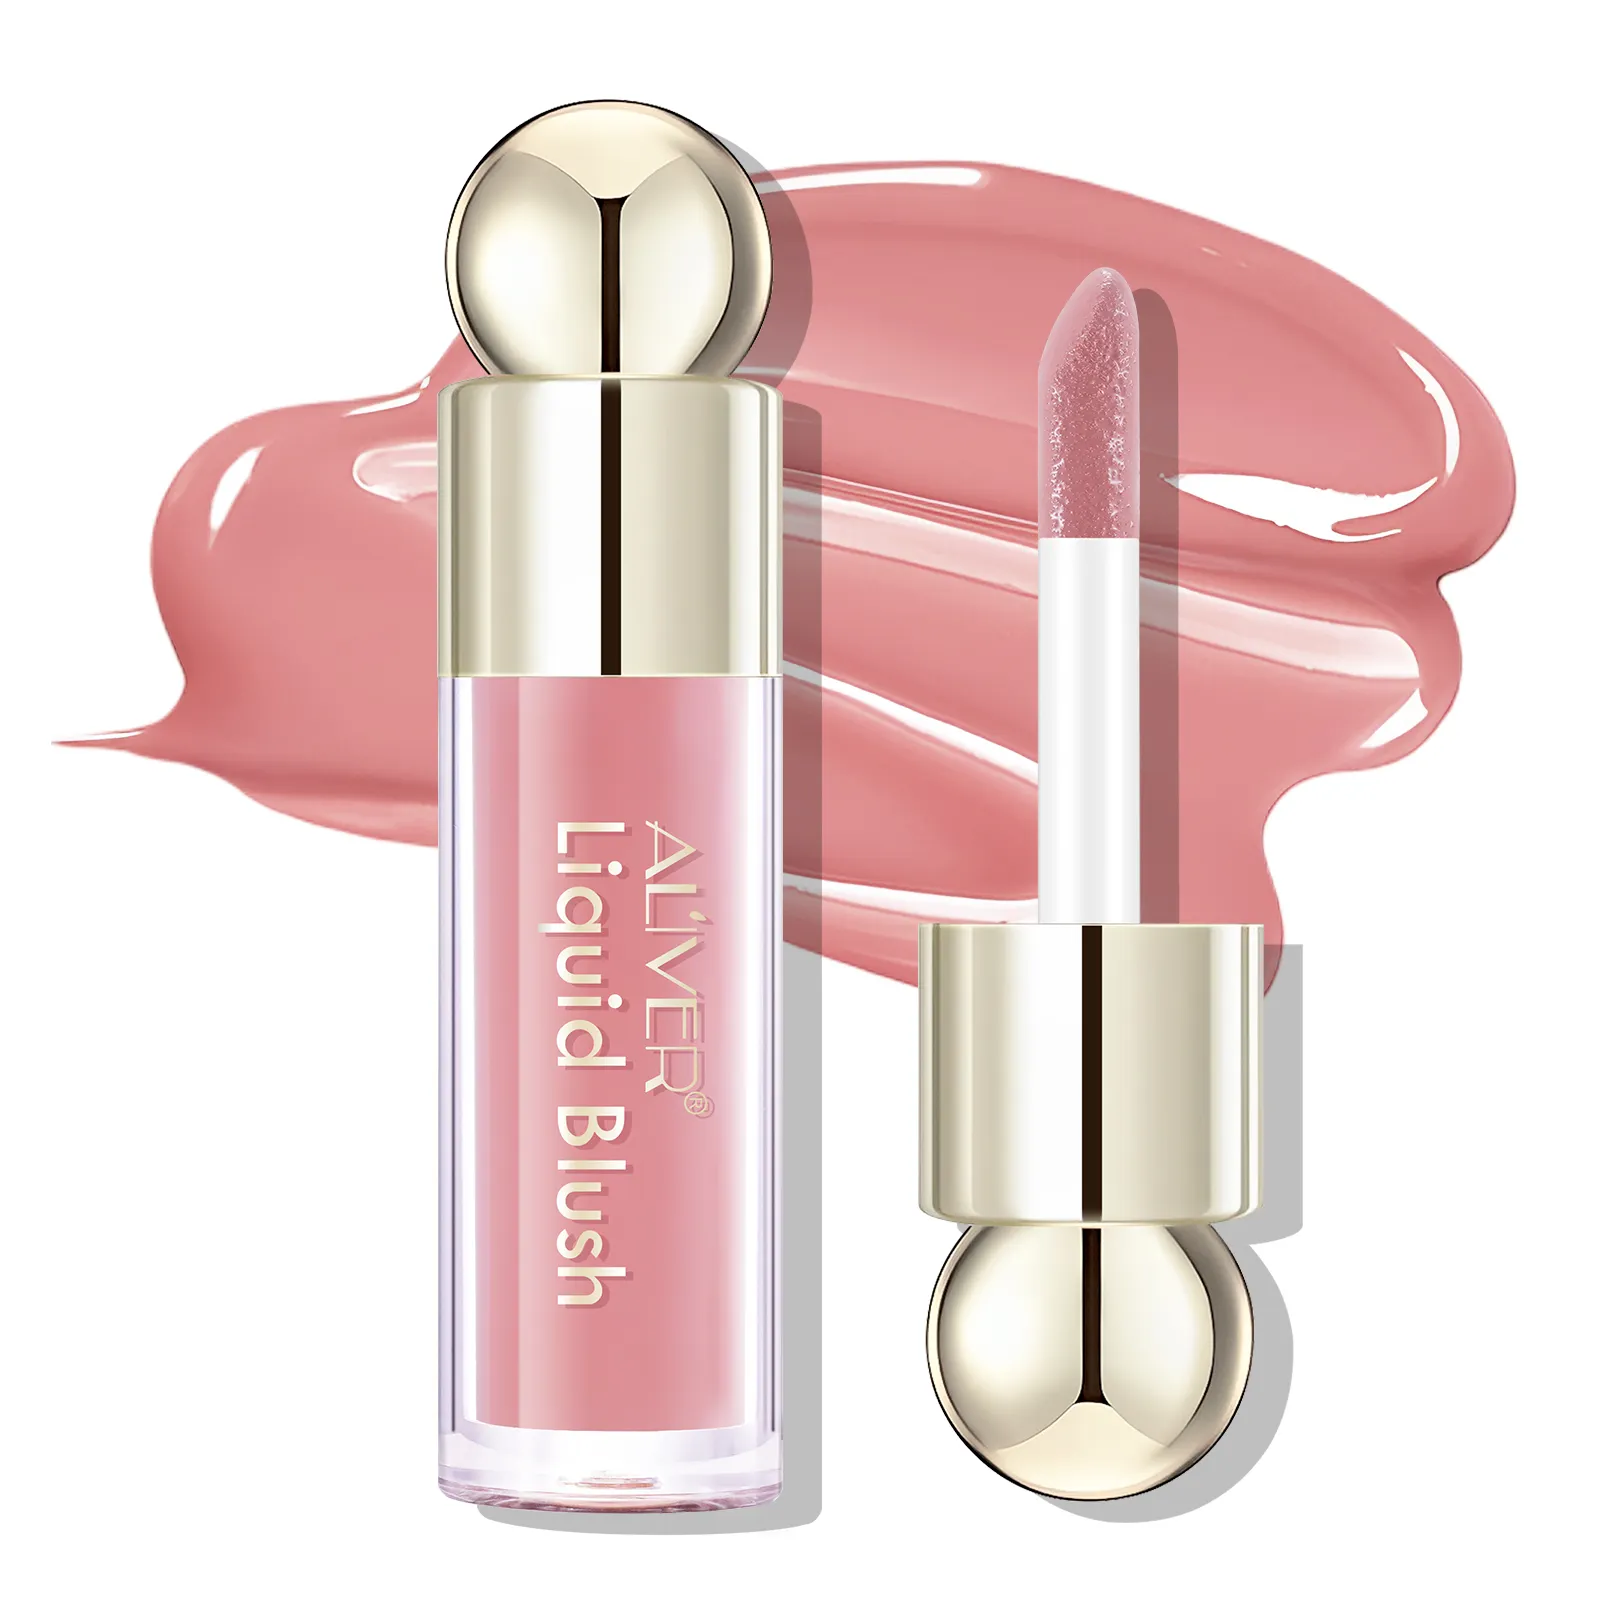 Perona pipi krim Vegan kustom Label pribadi Mata Bibir Makeup warna Maquillaje merah muda tahan air perona pipi cair